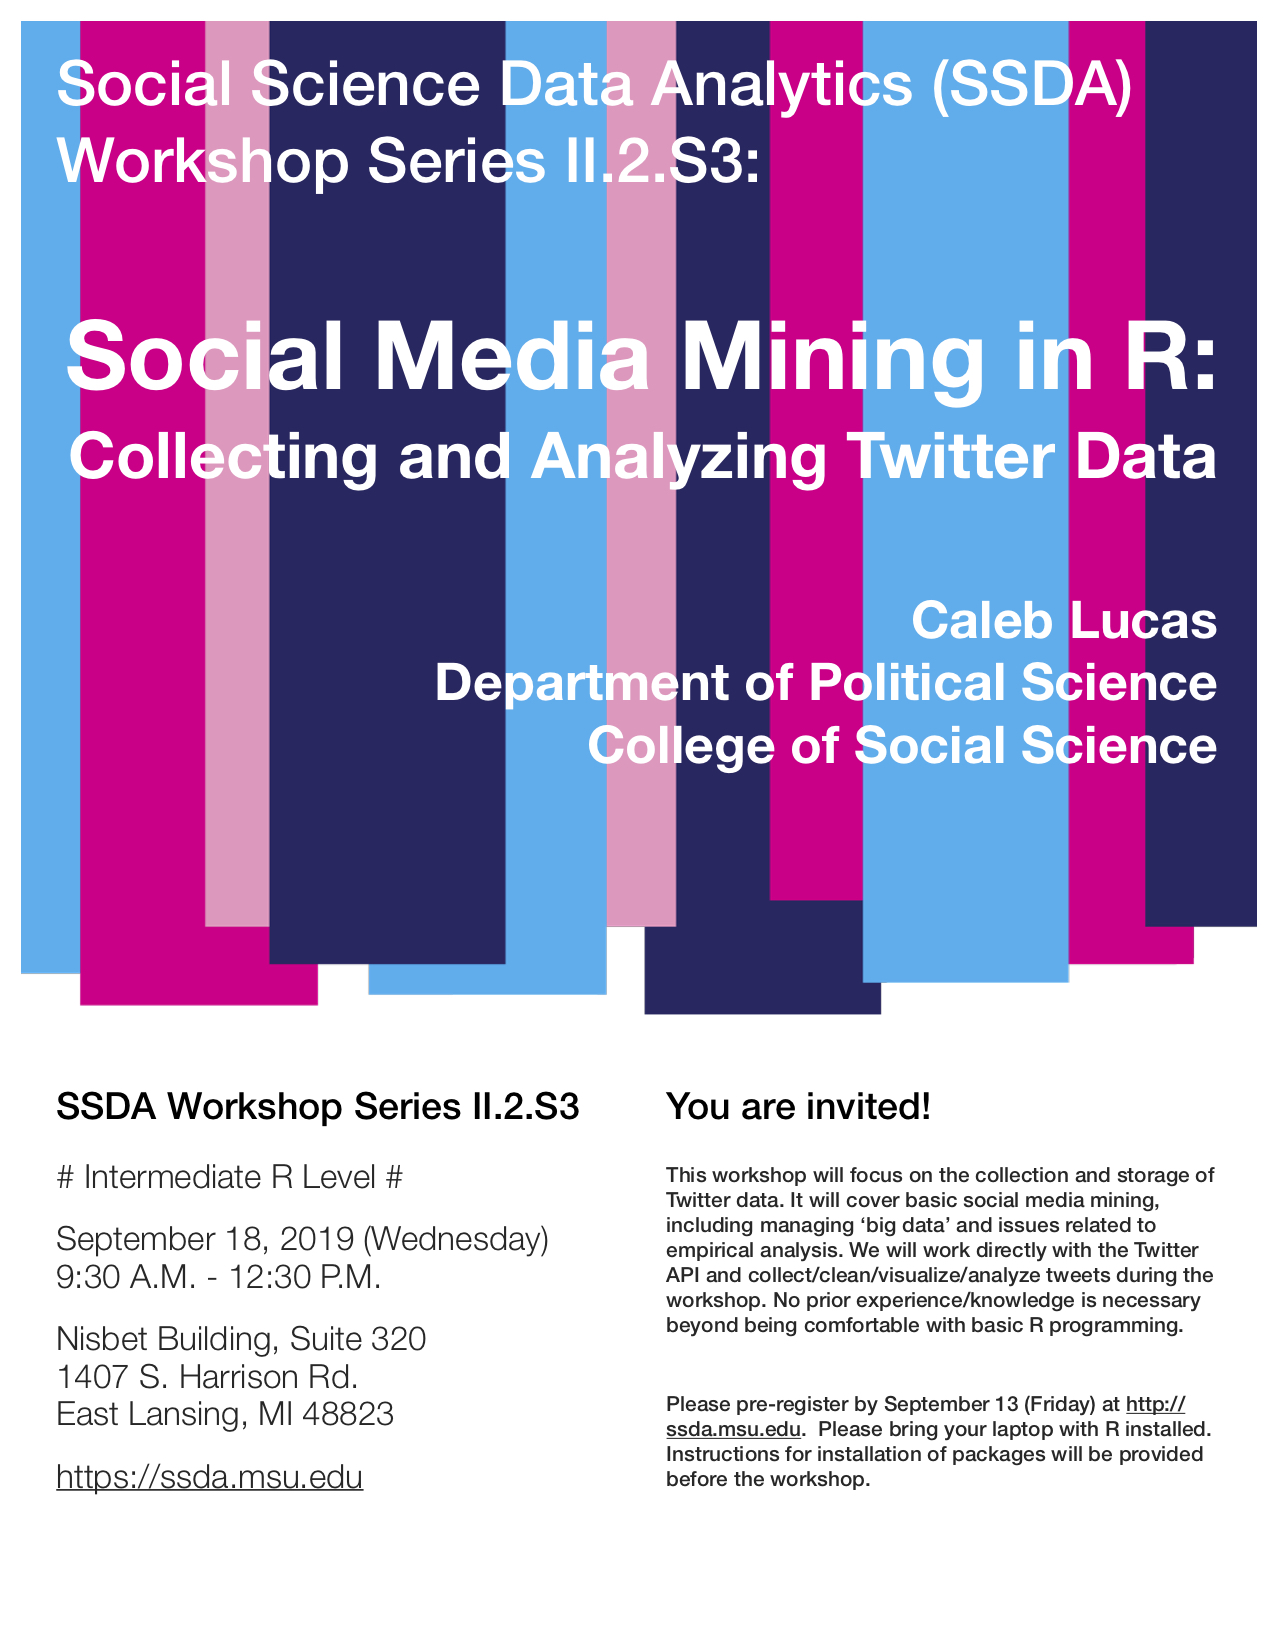 Social Media Mining in R